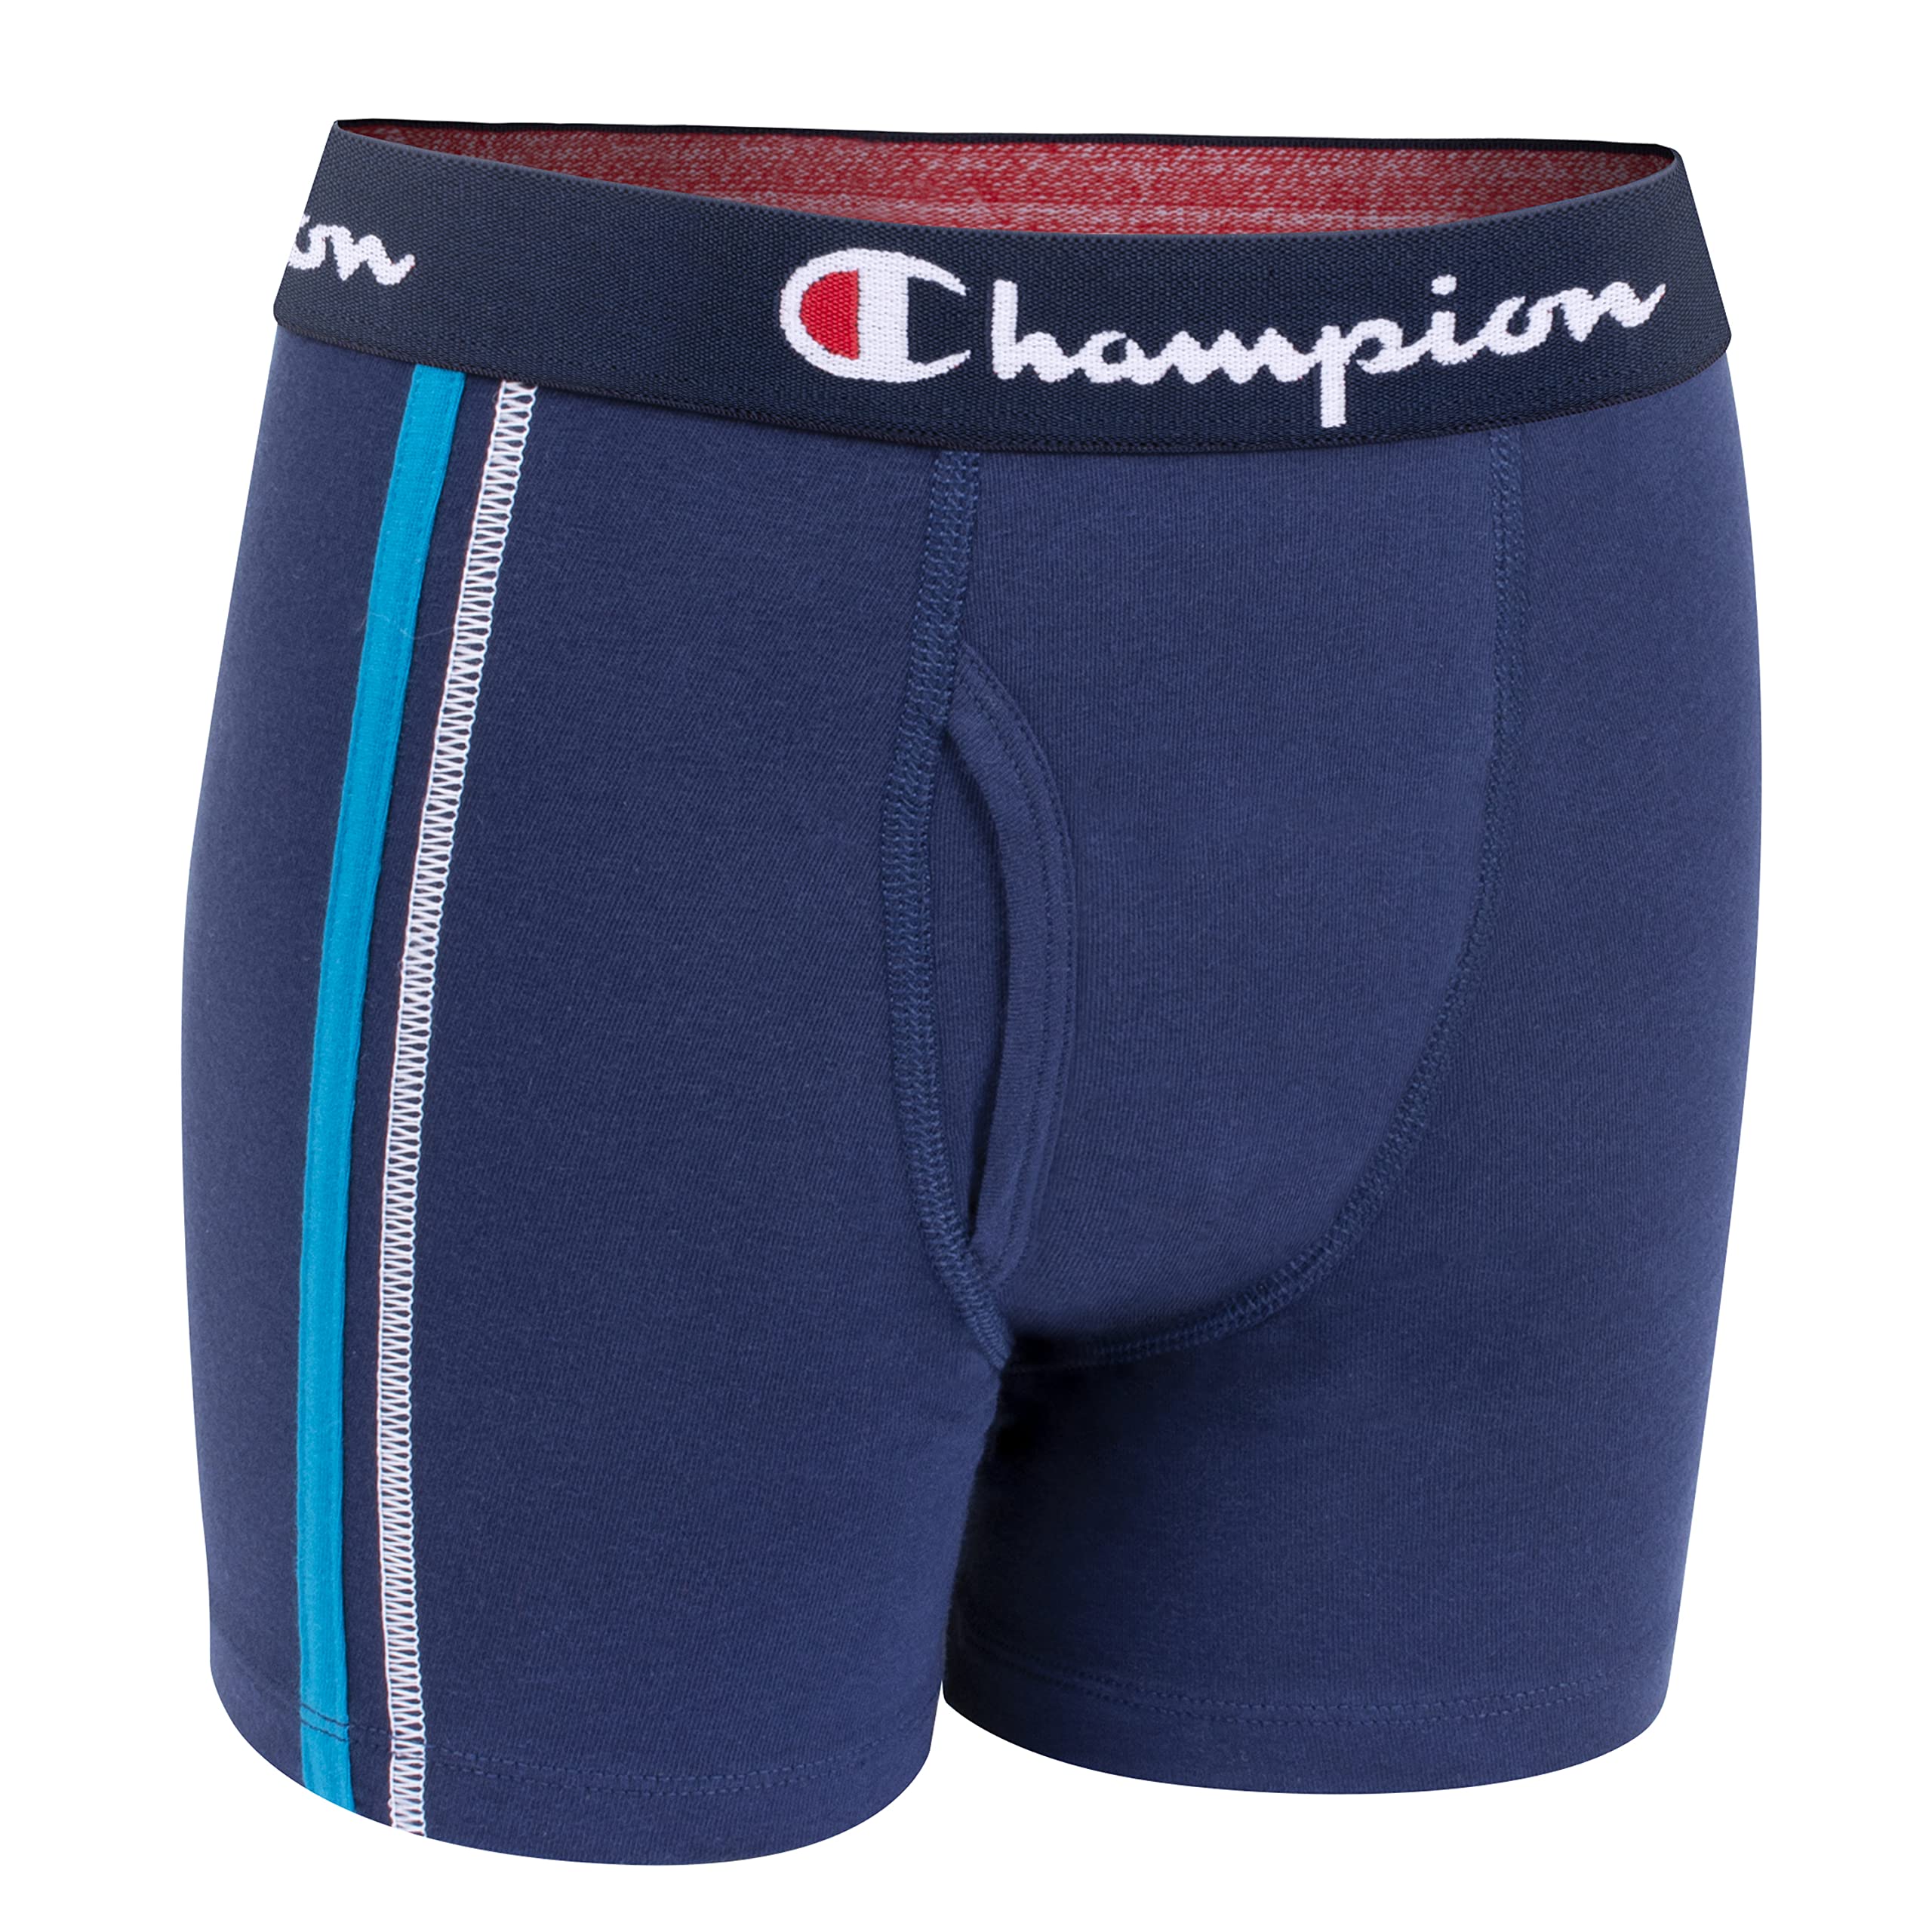 Champion Boys' Underwear, Cotton Stretch Boxer Briefs, Moisture-Wicking, Assorted 4-Pack